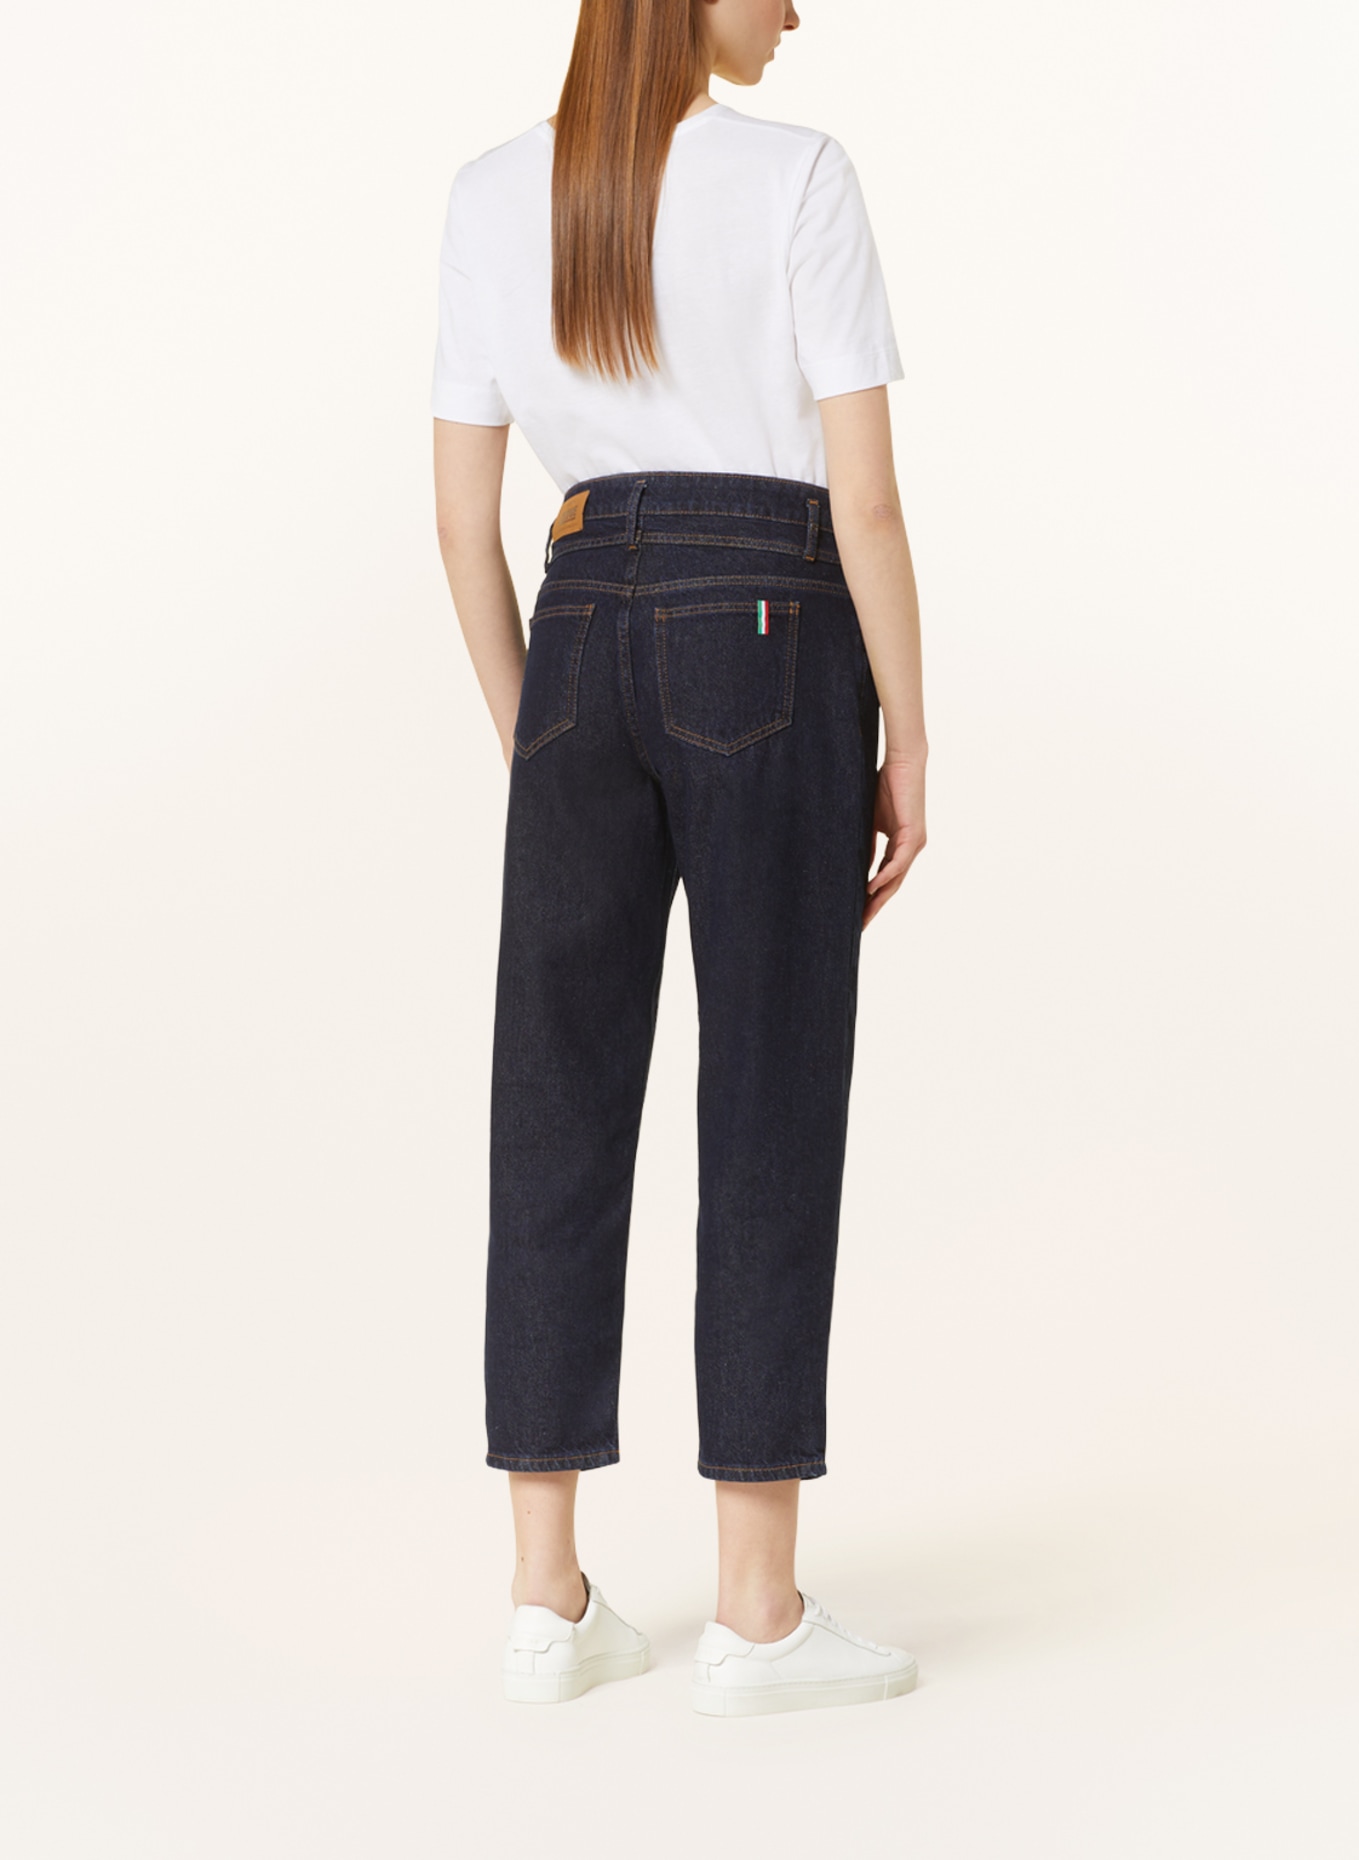 CINQUE Culotte jeans CISOLEIL, Color: 69 DUNKELBLAU (Image 4)